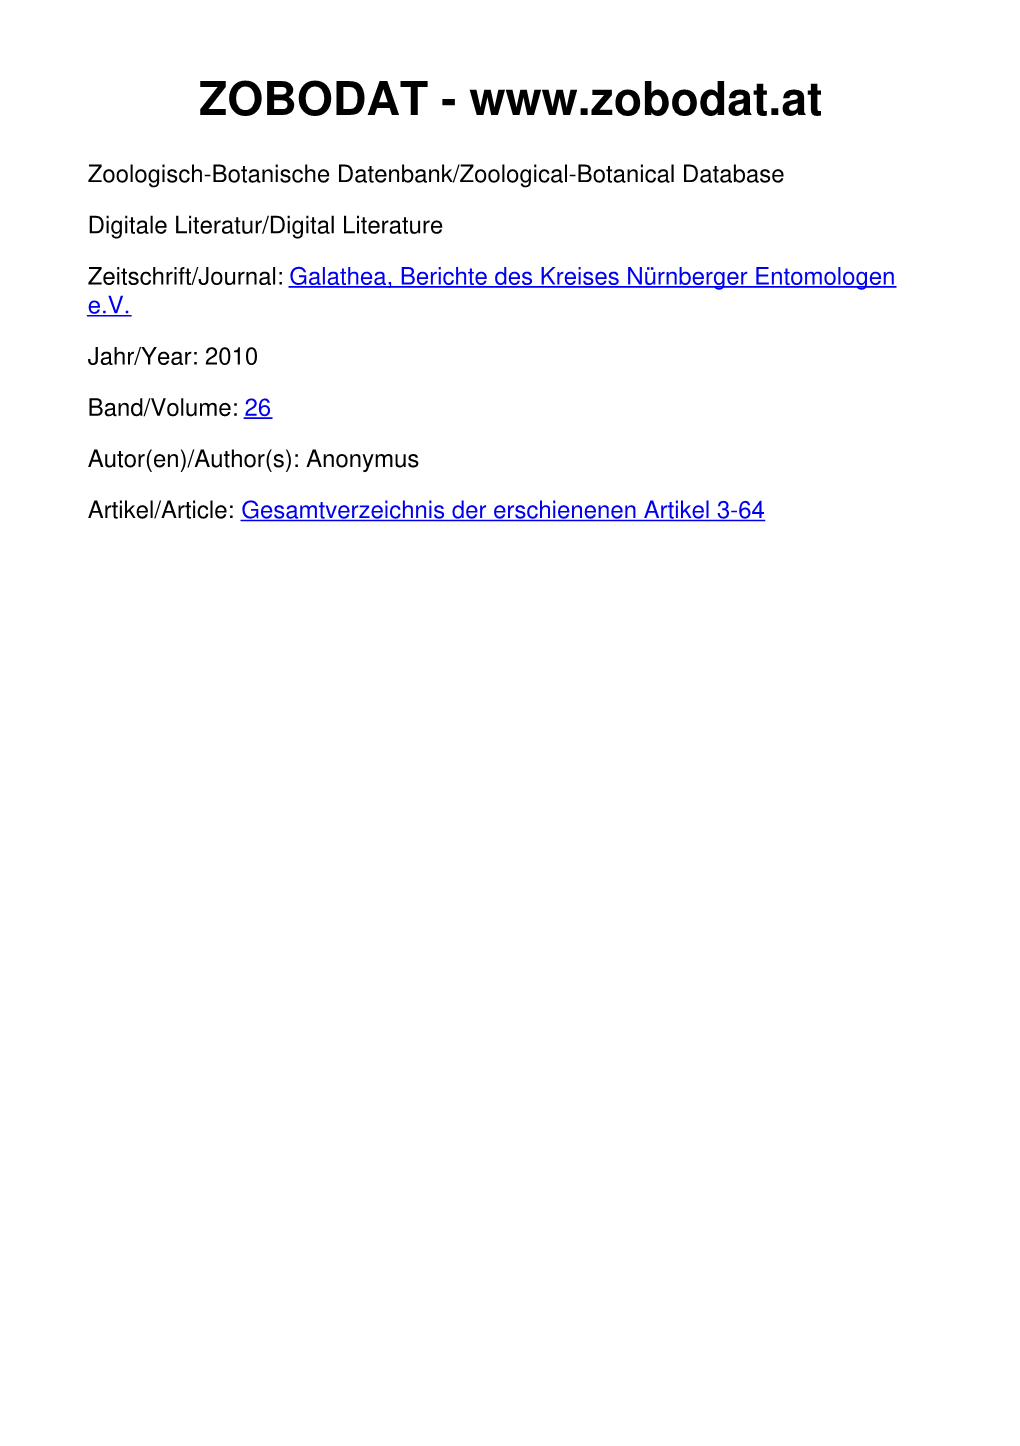 Gesamtverzeichnis Der Erschienenen Artikel 3-64 Gesamtverzeichnis©Kreis Nürnberger Entomologen; Der Erschienenen Download Unter Artikel